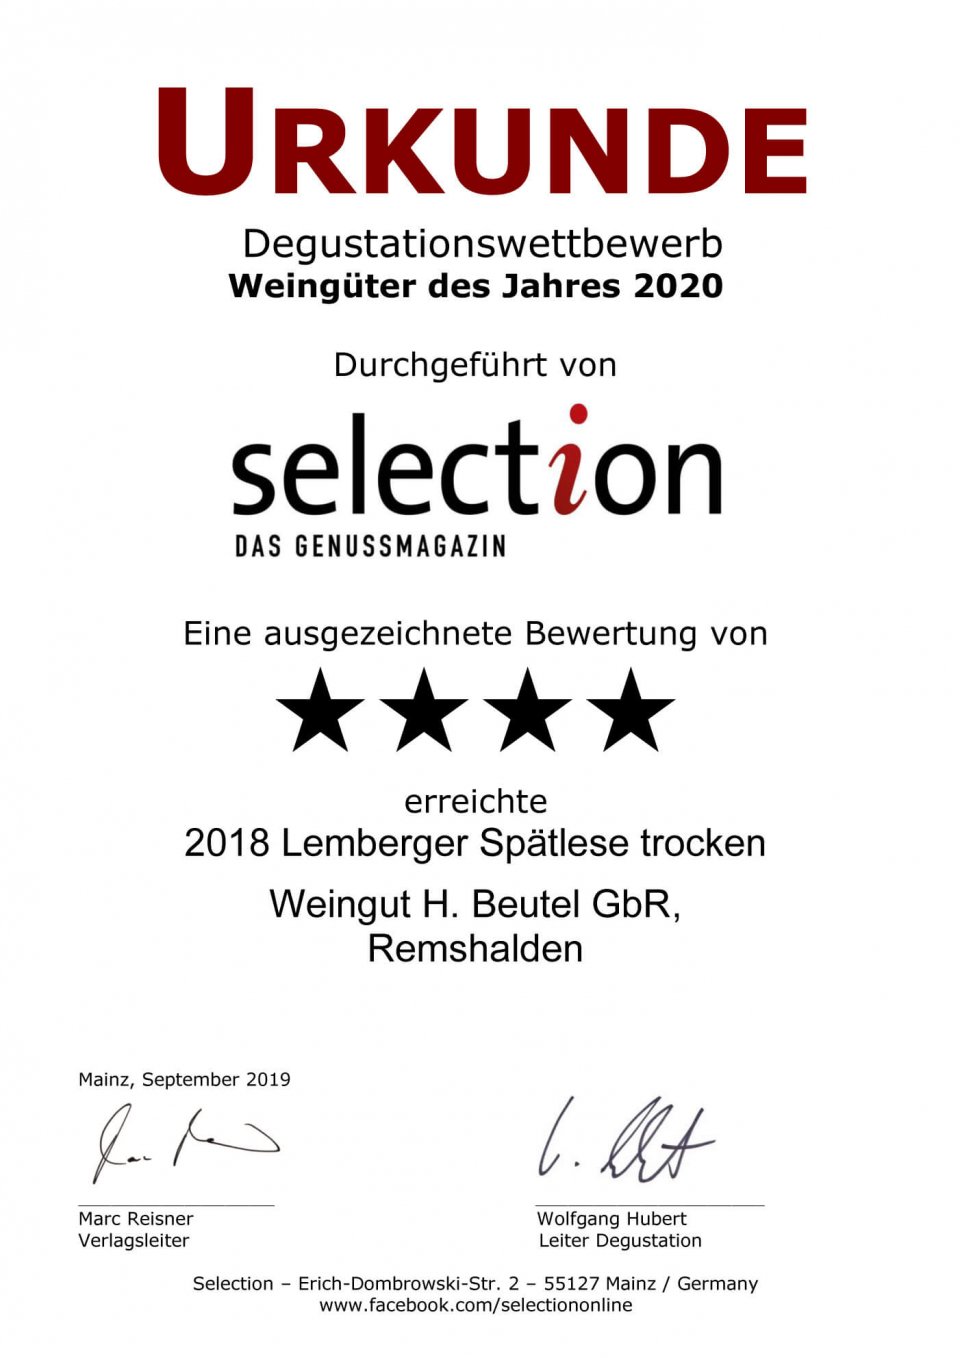 Urkunde Weingut 2020 - Lemberger Spätlese 2018